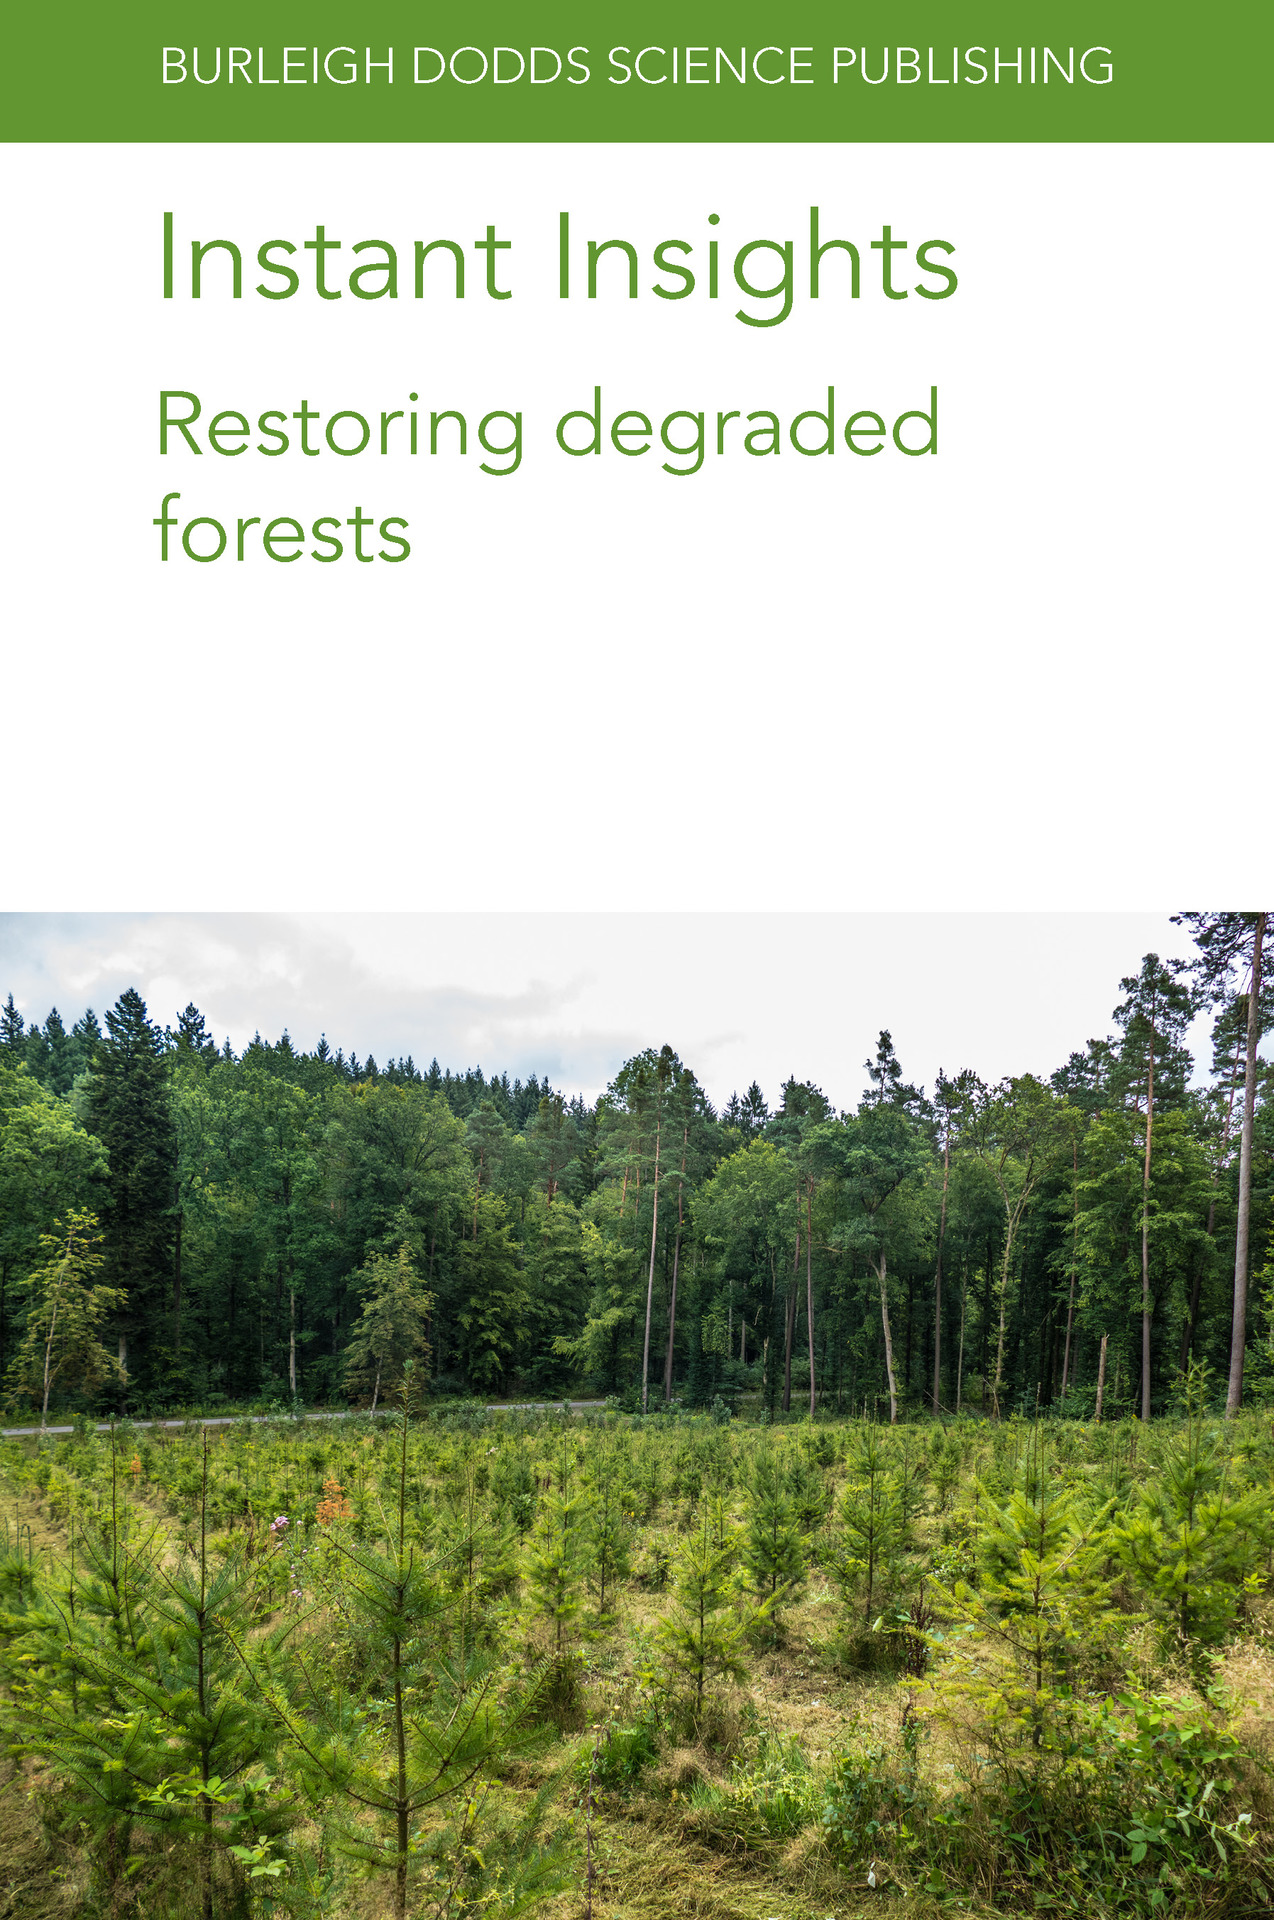 Restoring degraded forests